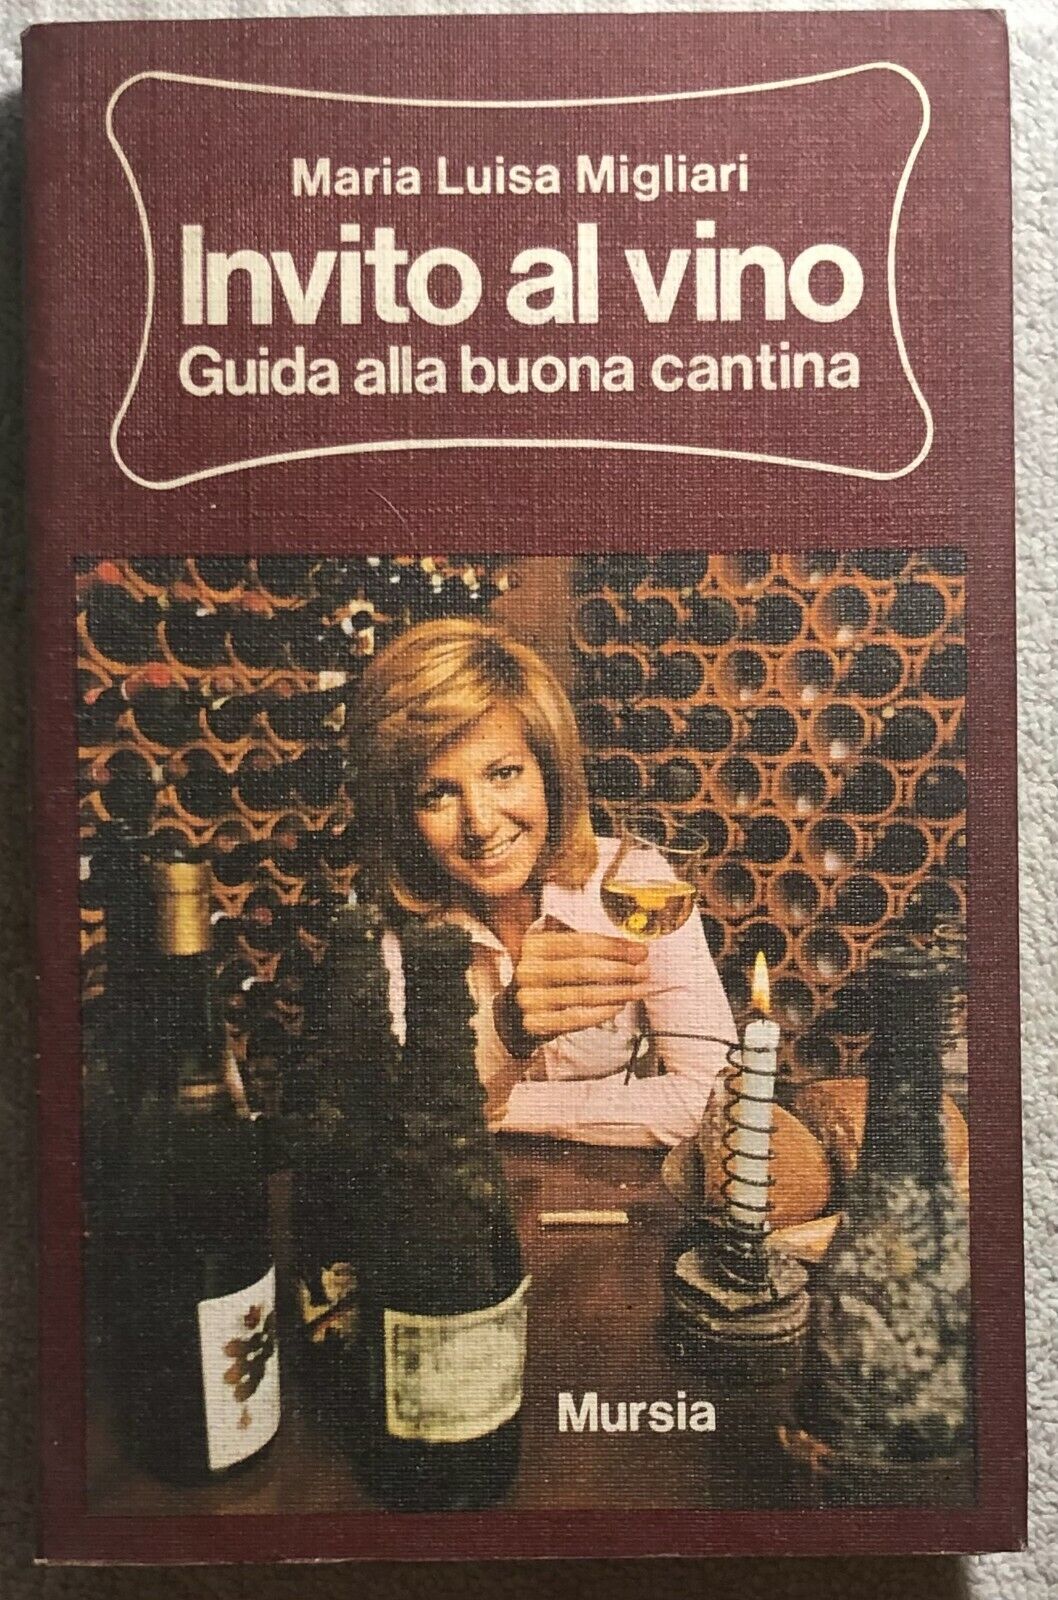 Invito al vino - Guida alla buona cantina di Maria Luisa Migliari,  1974,  Mursi